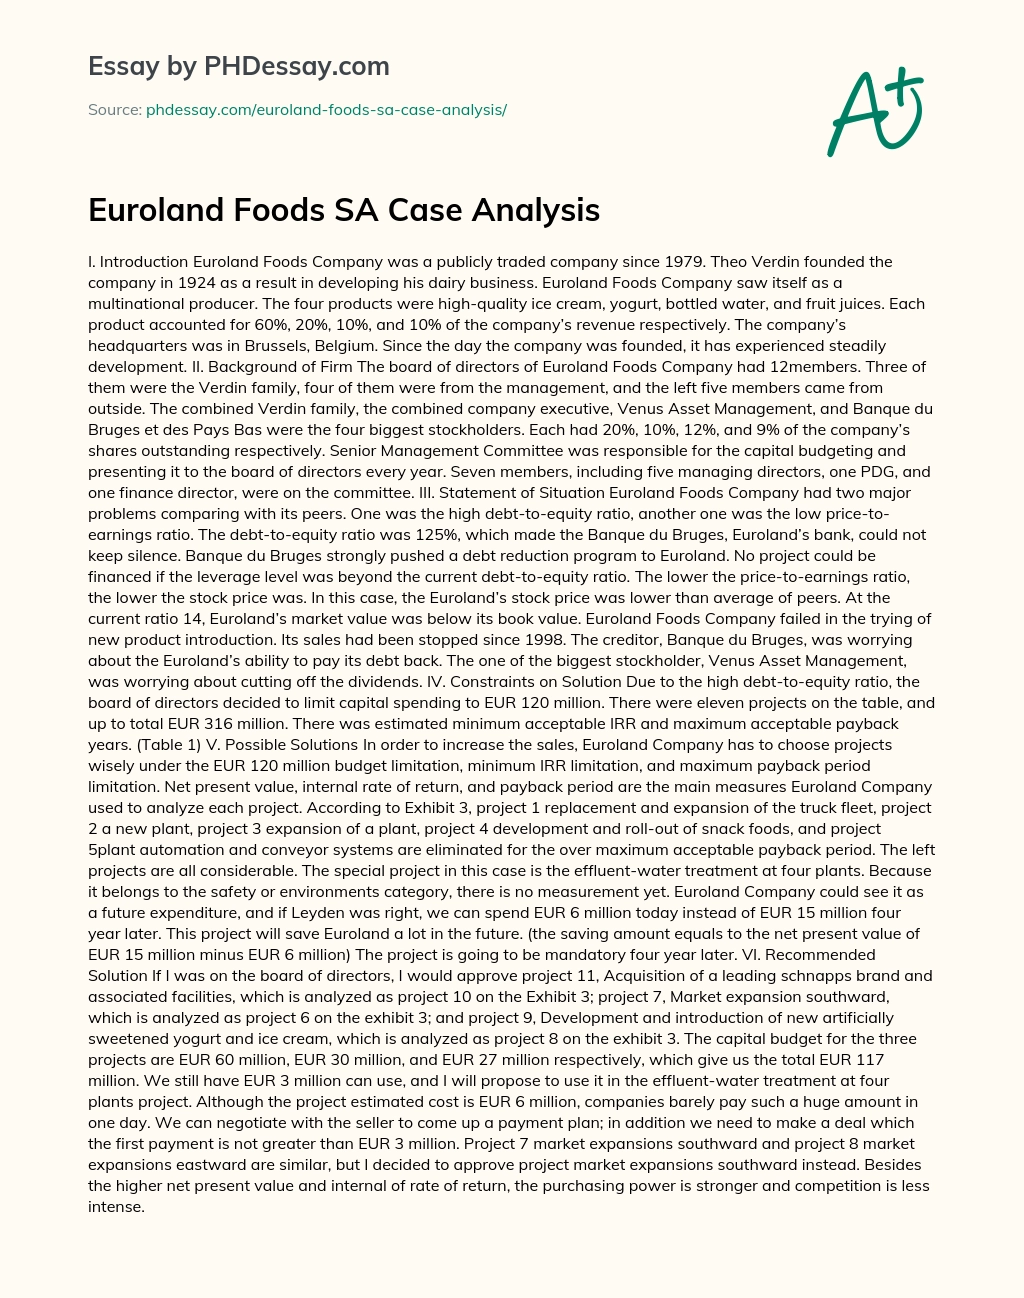 Euroland Foods SA Case Analysis essay